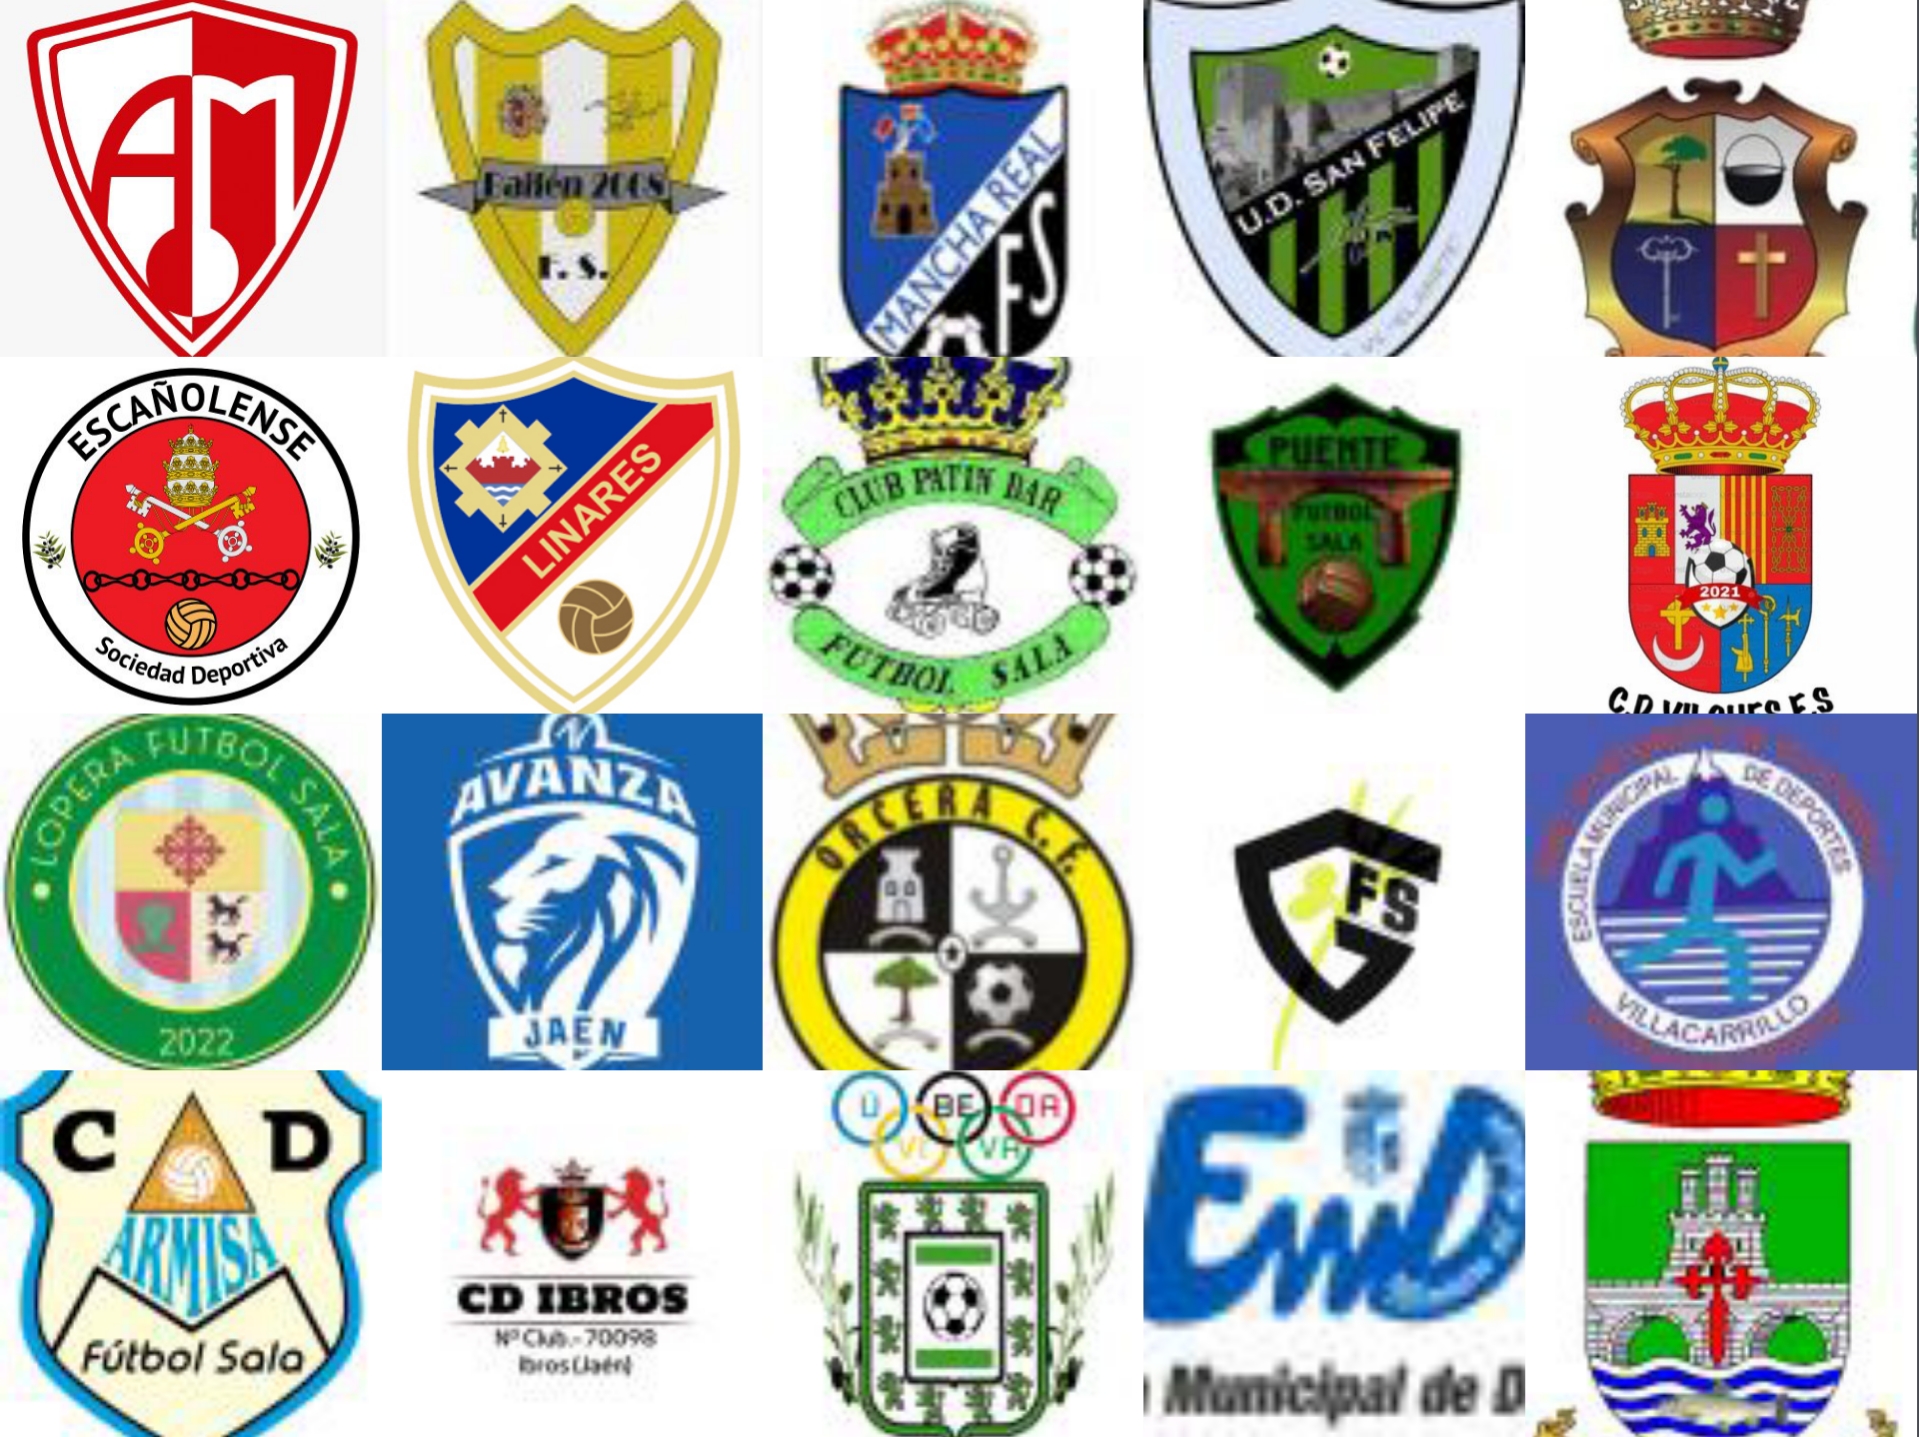 Veinte equipos disputarán la Liga de Segunda Andaluza de Fútbol Sala divididos en dos grupos